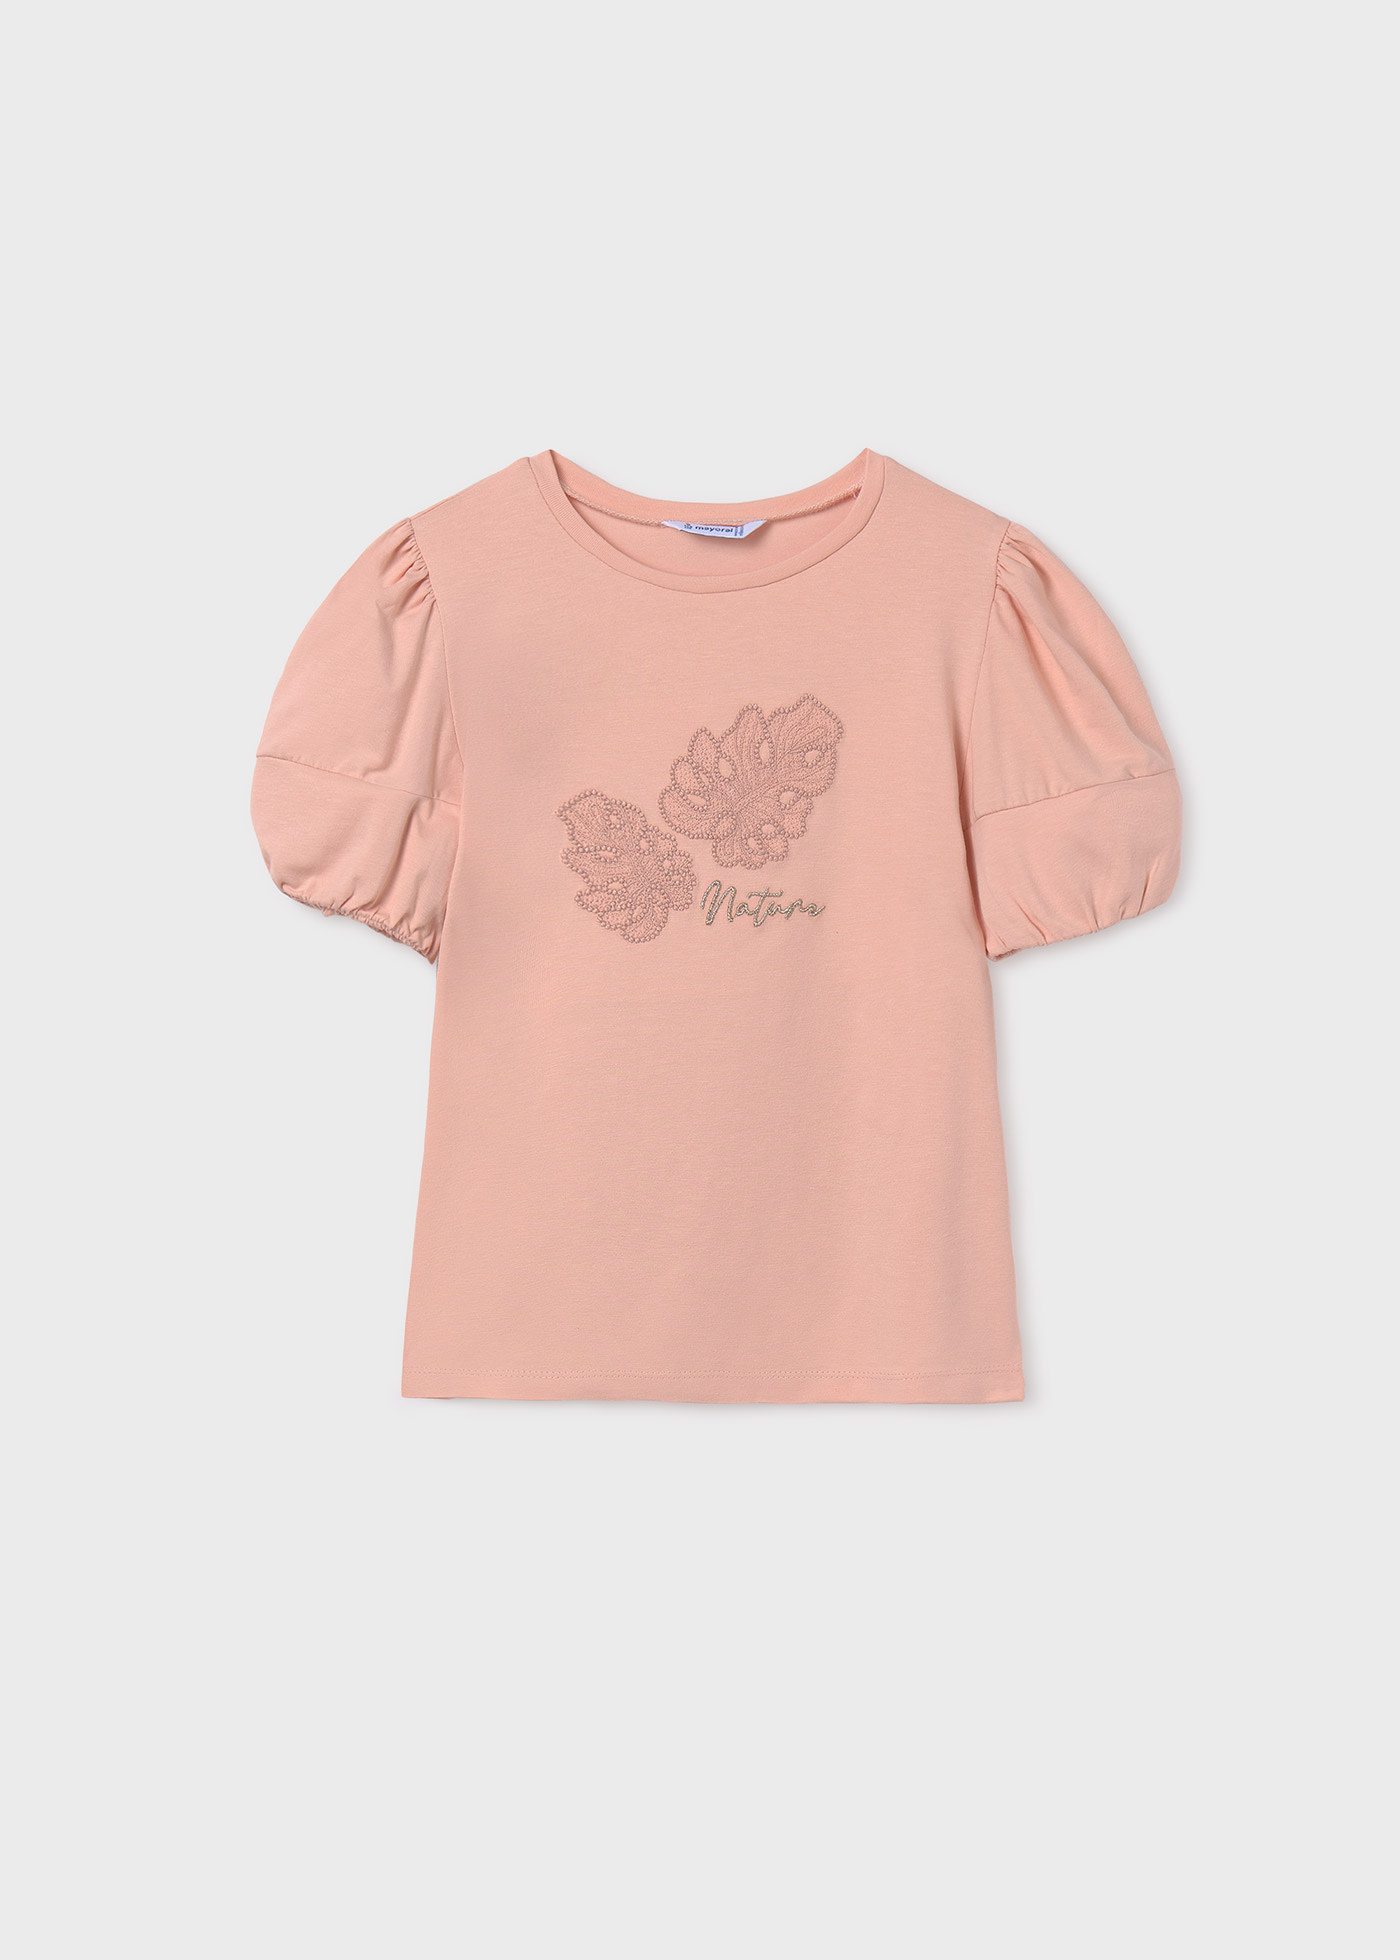 T-Shirt Applikation Better Cotton Teenager Mädchen